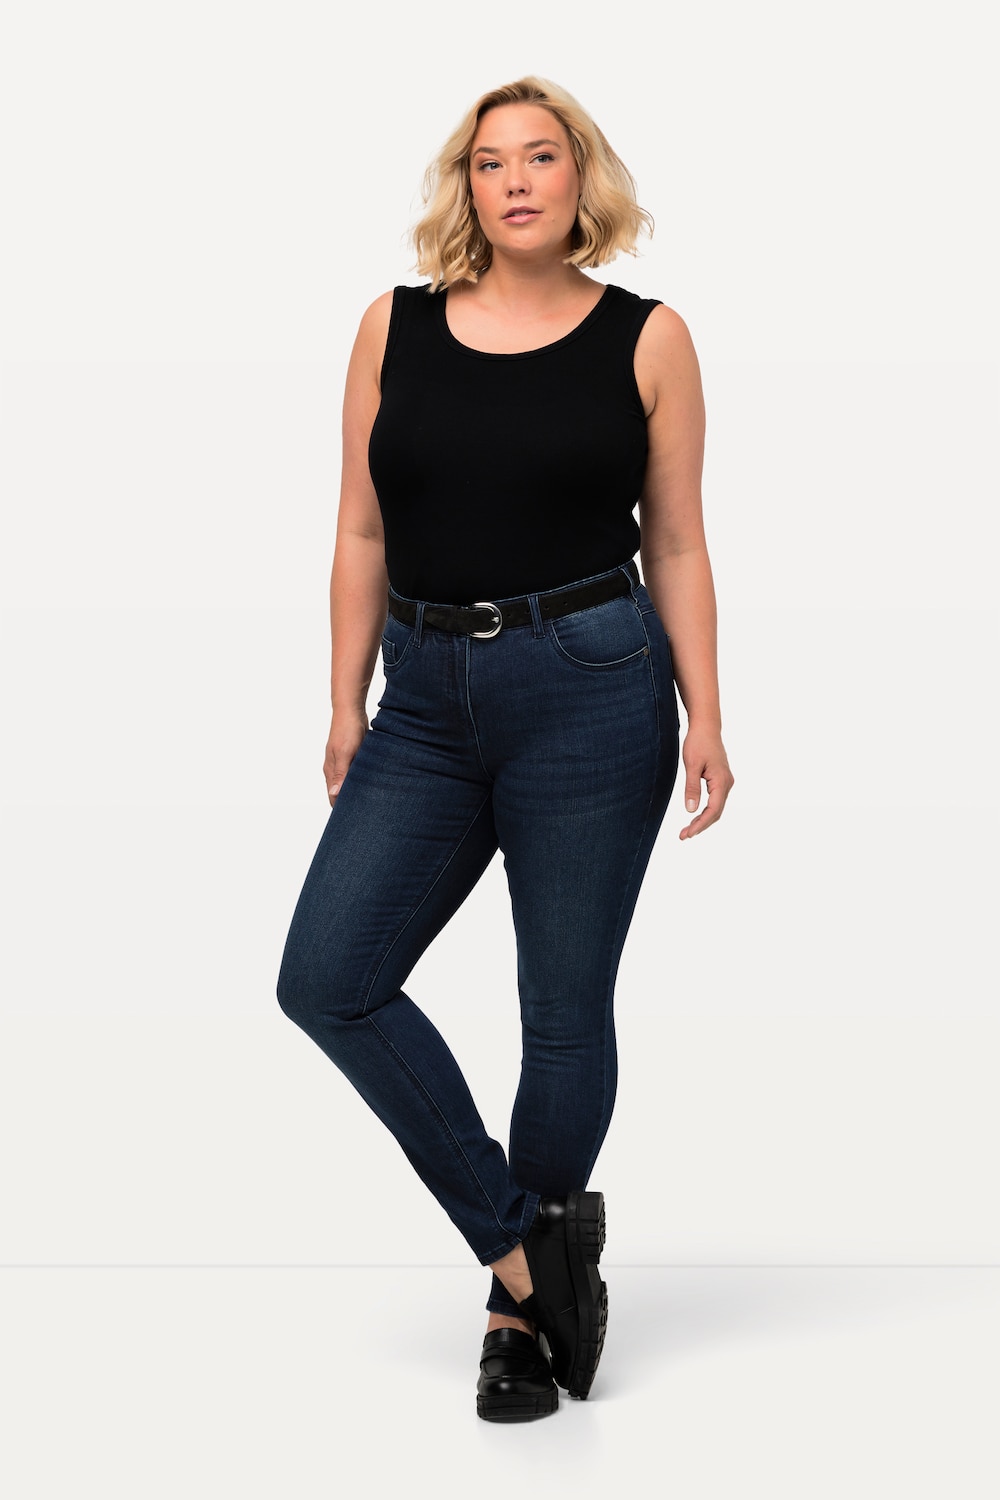 Grote Maten skinny jeans Sarah, Dames, blauw, Maat: 84, Katoen/Polyester/Viscose, Ulla Popken